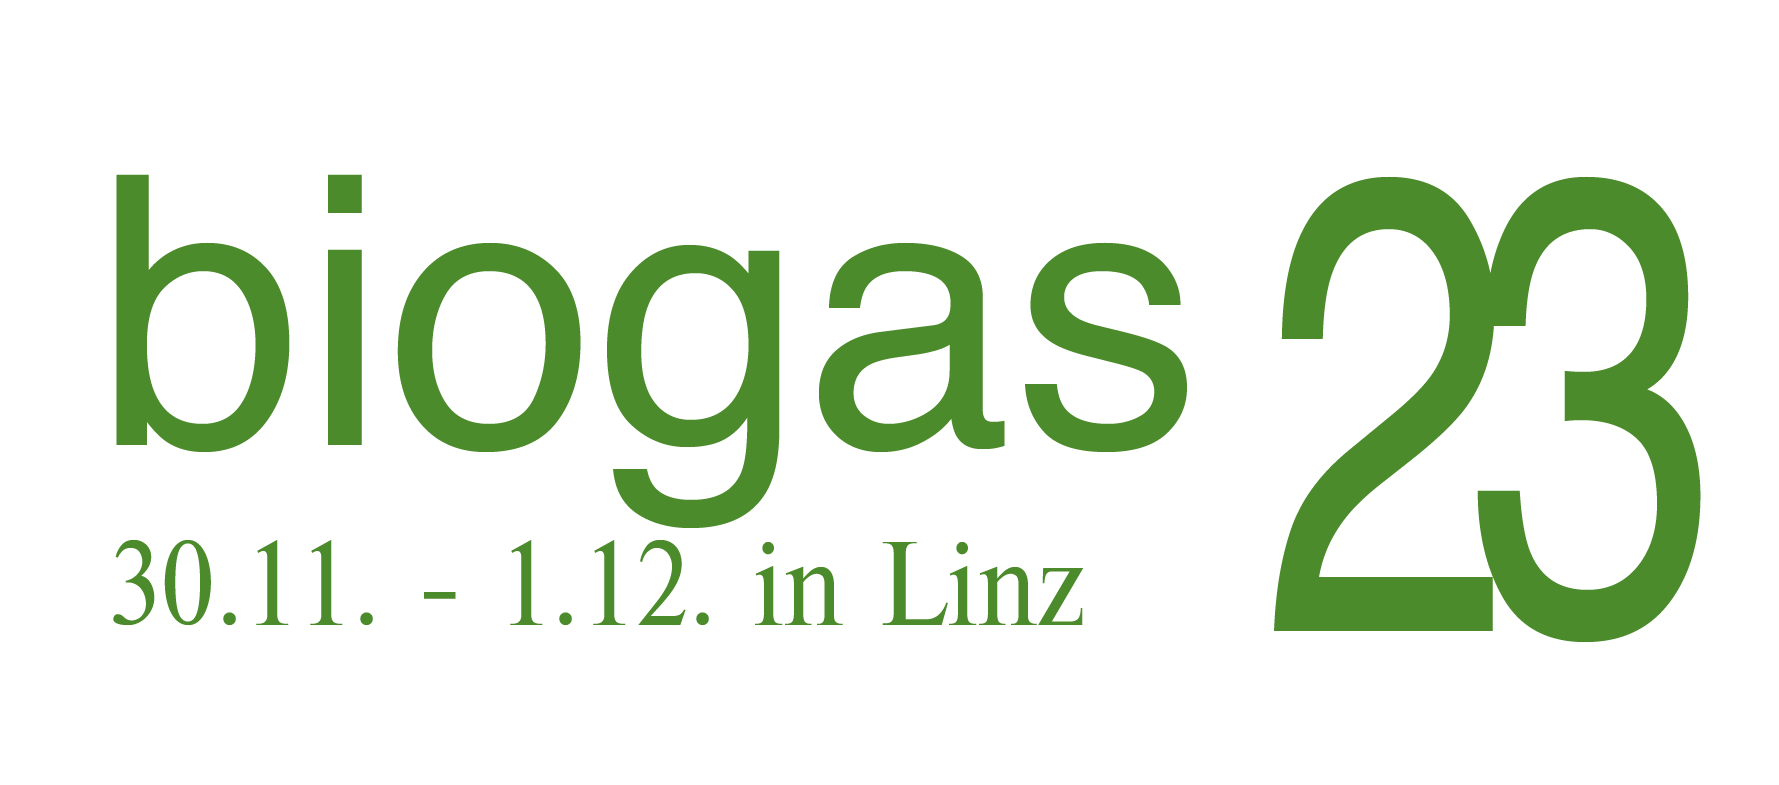 biogas23 i Linz